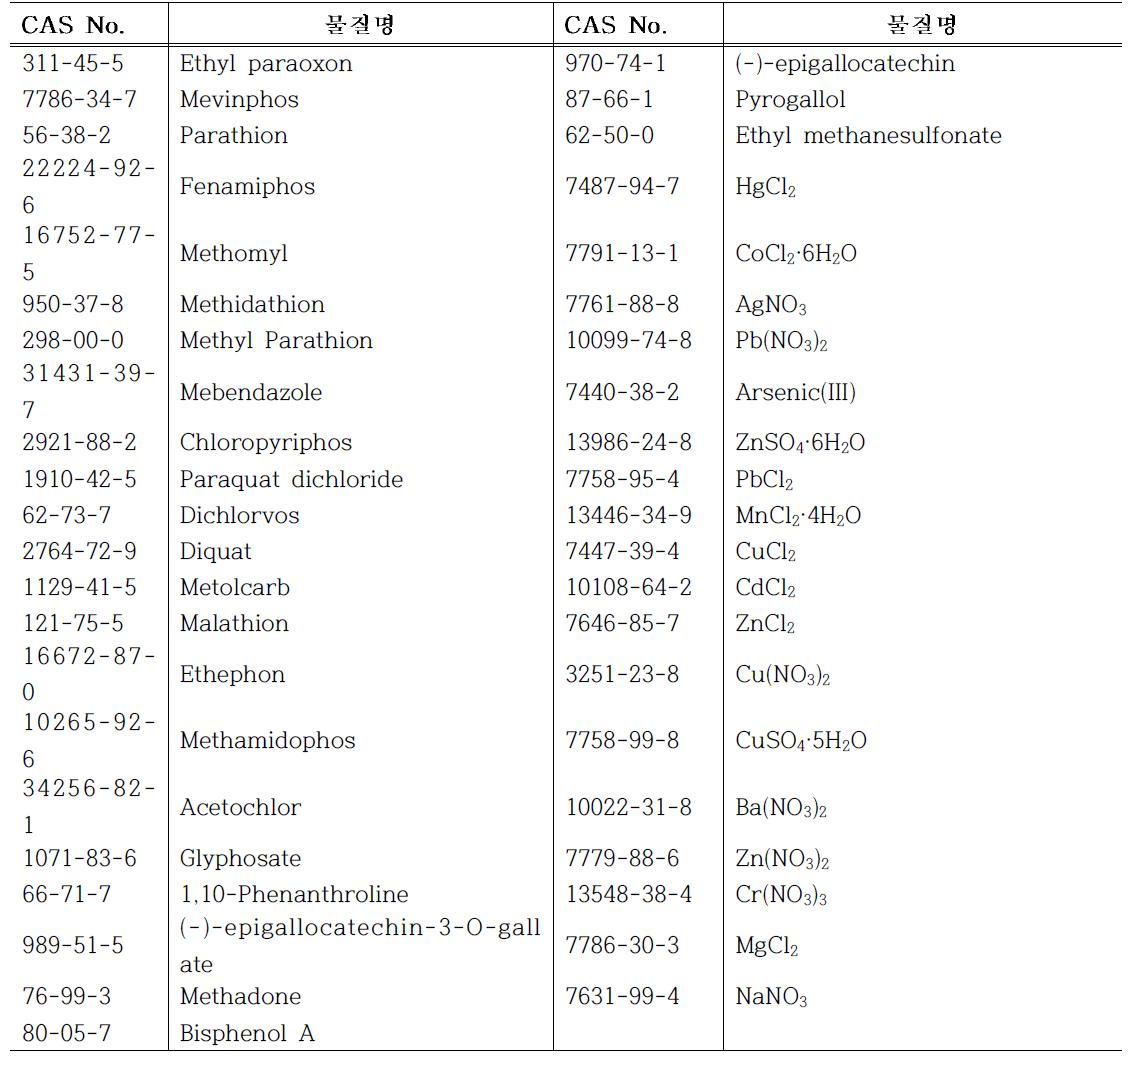 예쁜꼬마성충과 Mouse 상관분석에서 설정한 범위 내에 속한 화학물질 목록